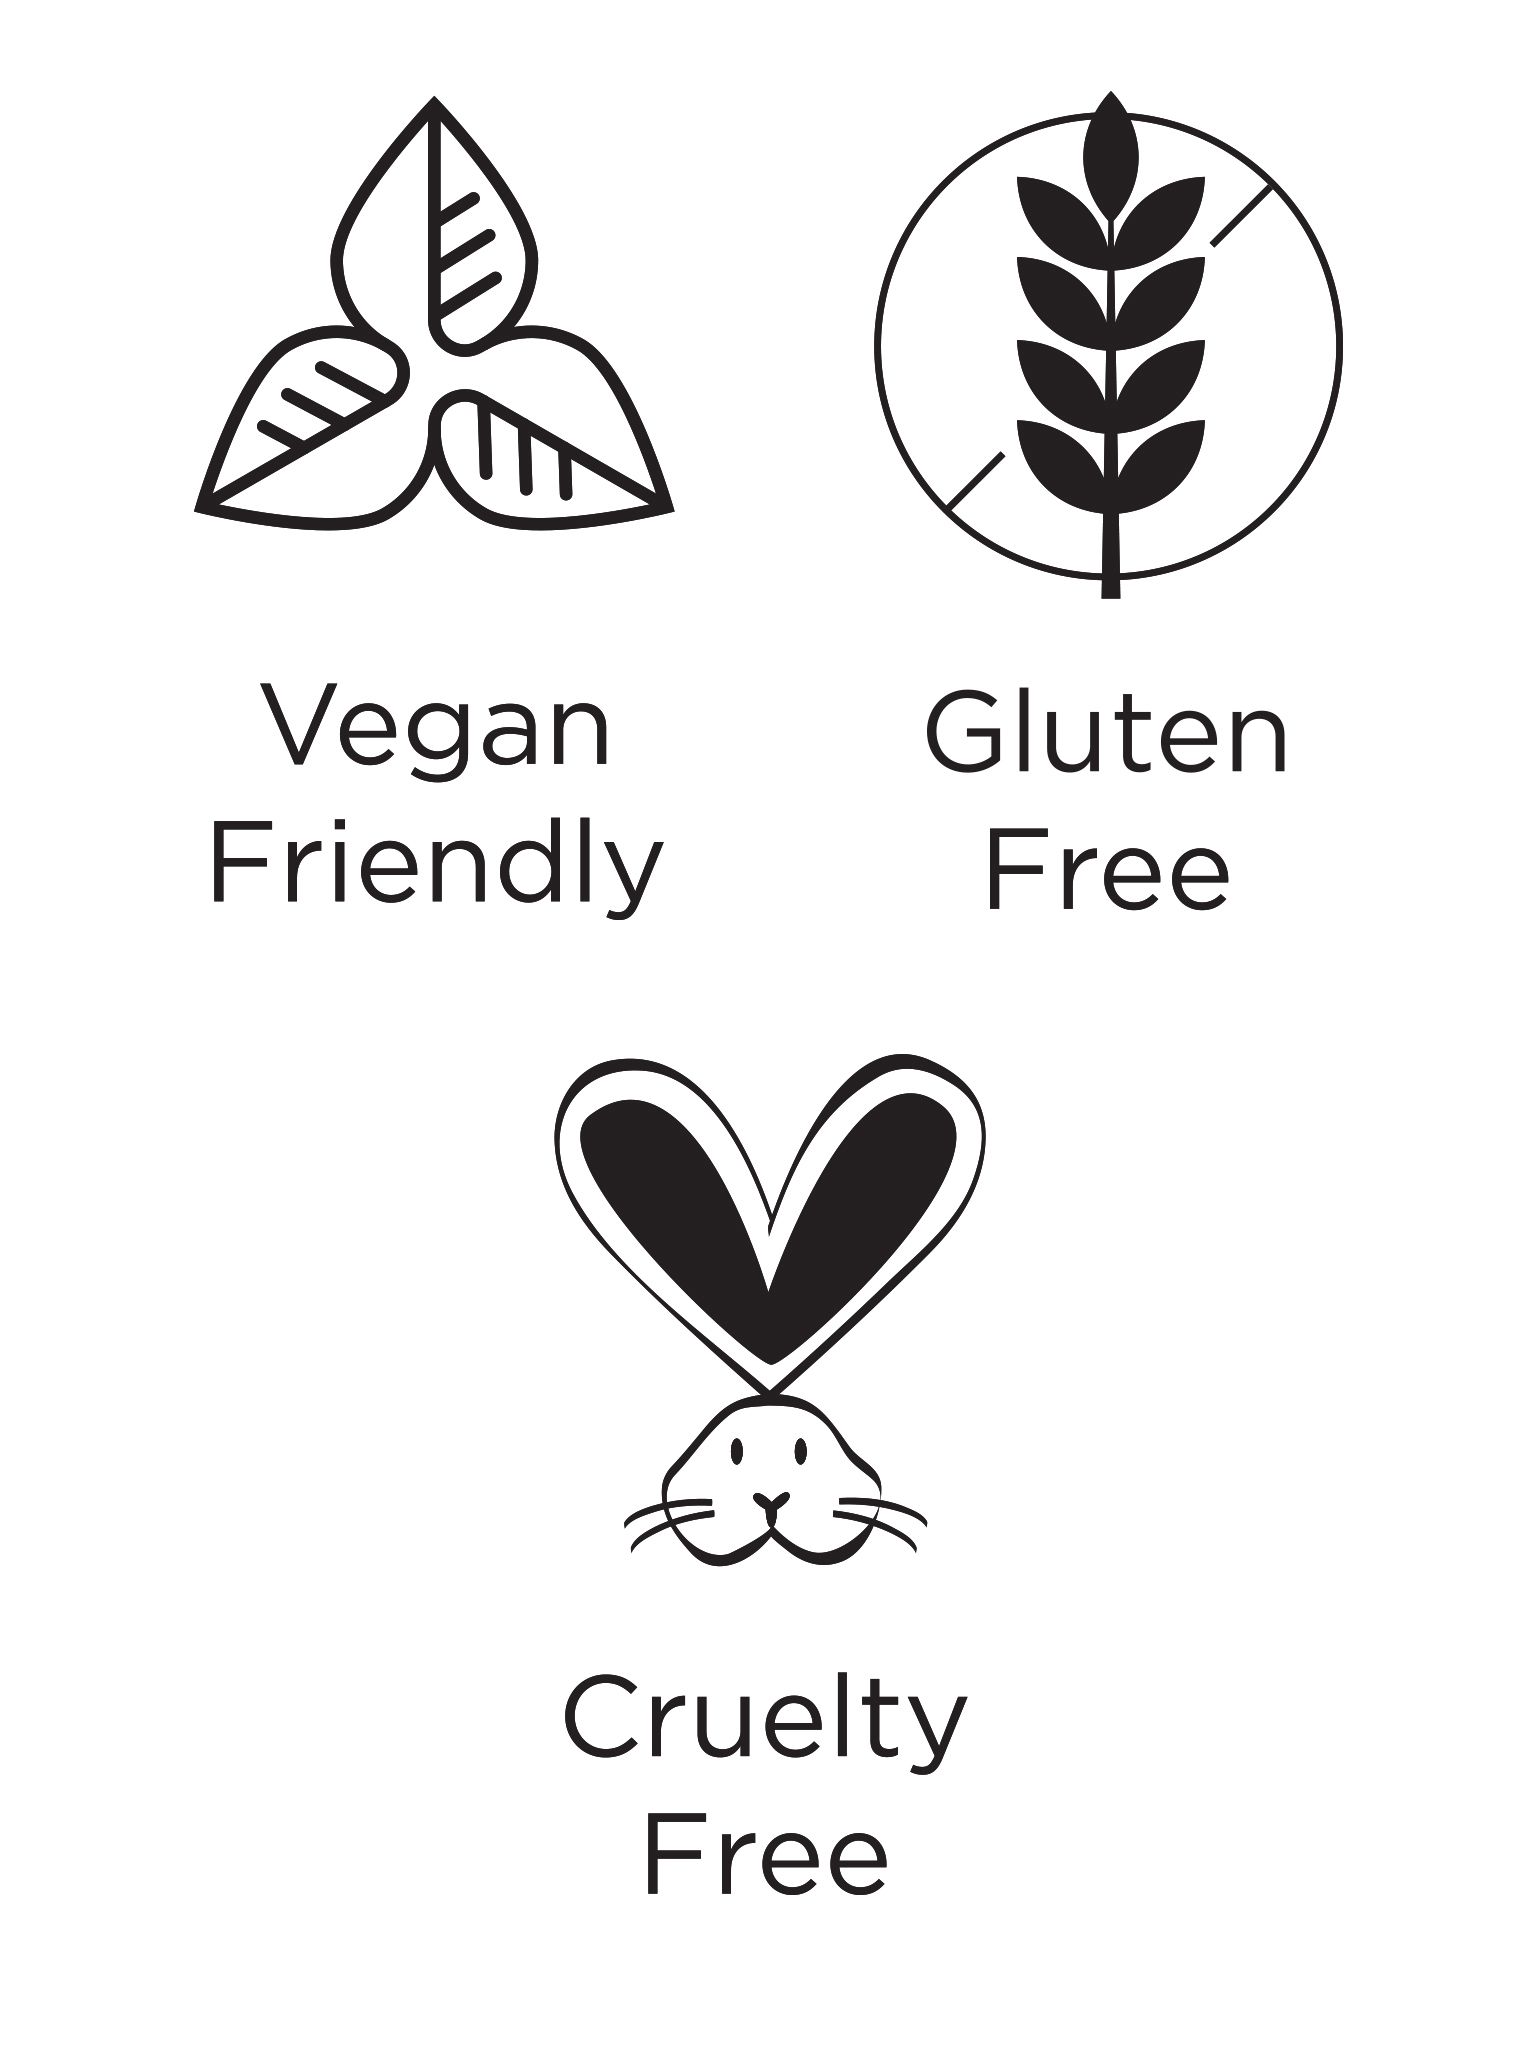 Vegan, Gluten-Free & Cruelty-Free logos